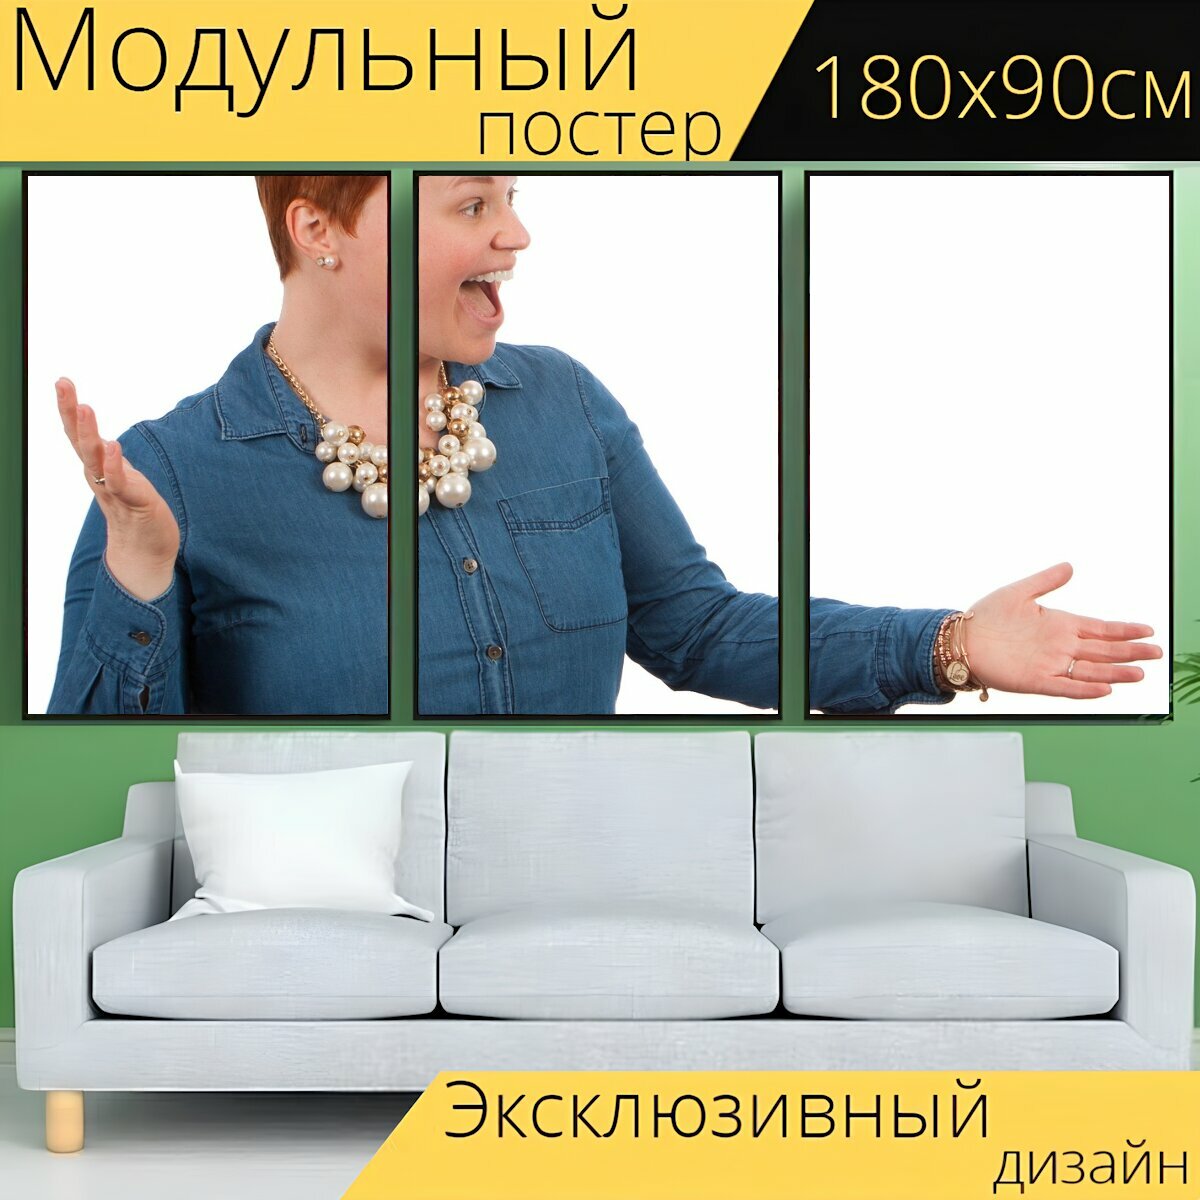 Модульный постер "Женщина, позы, электронное обучение" 180 x 90 см. для интерьера